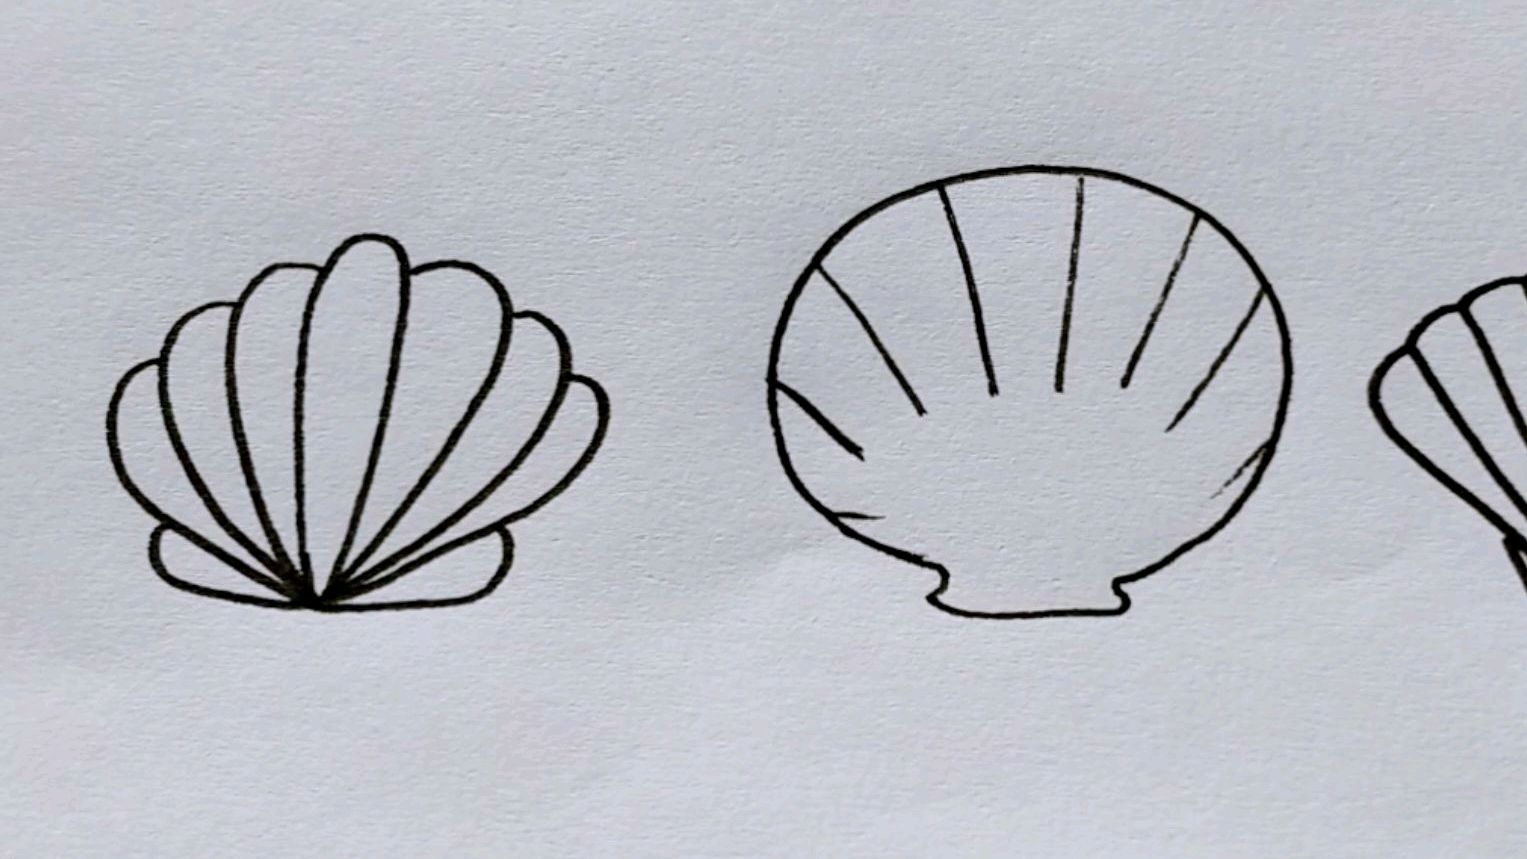 贝壳简单画法图片